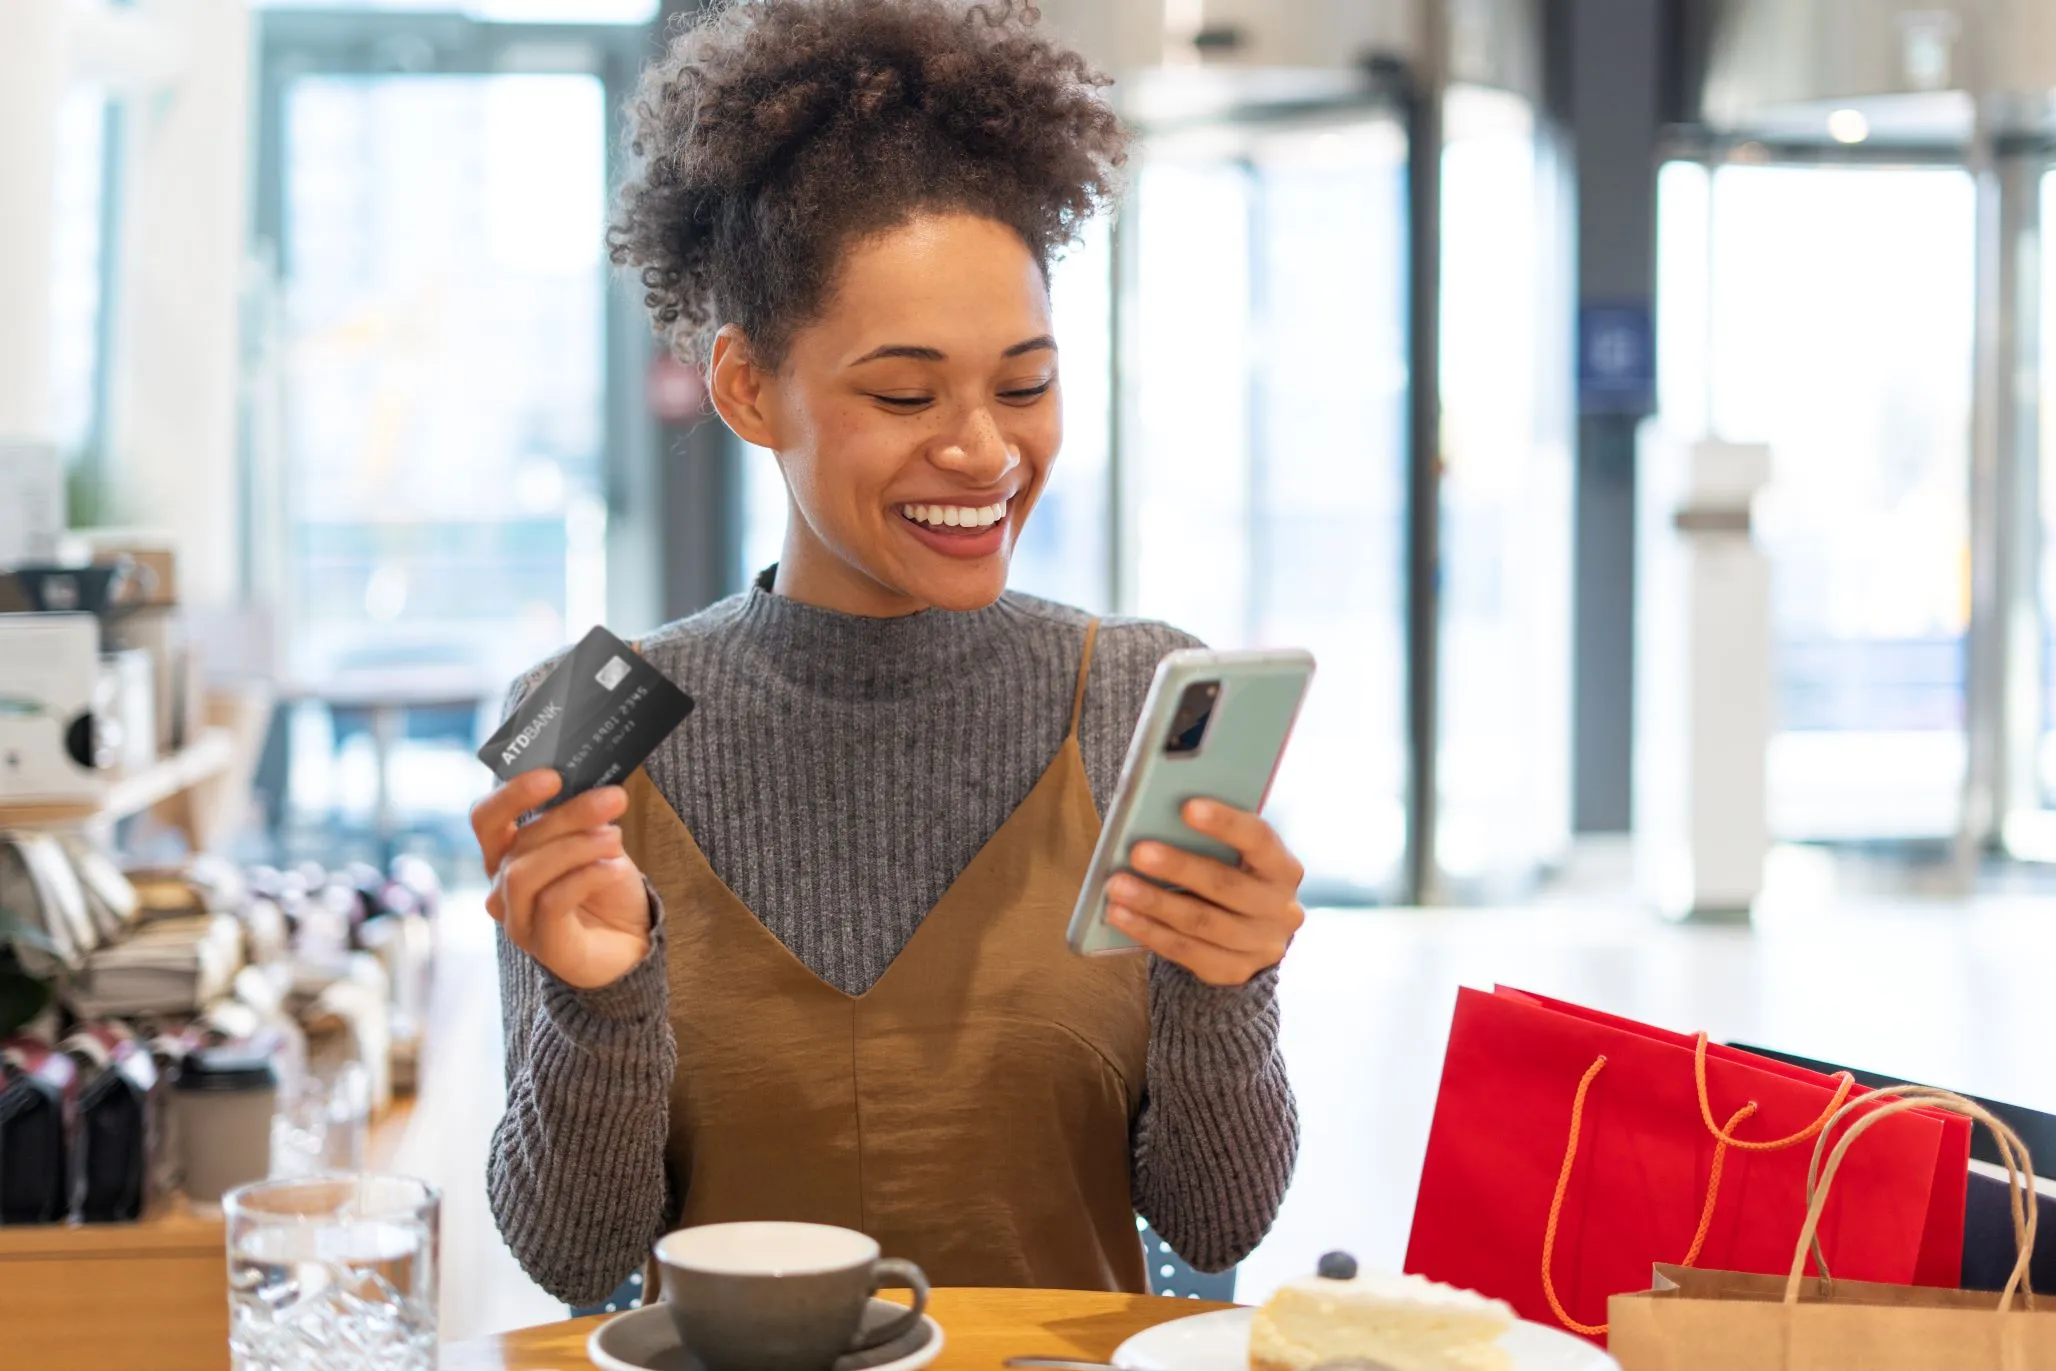 Mulher negra com suéter cinza está próxima a umas sacolas de compra segurando um celular com uma mão e na outra um cartão de crédito.